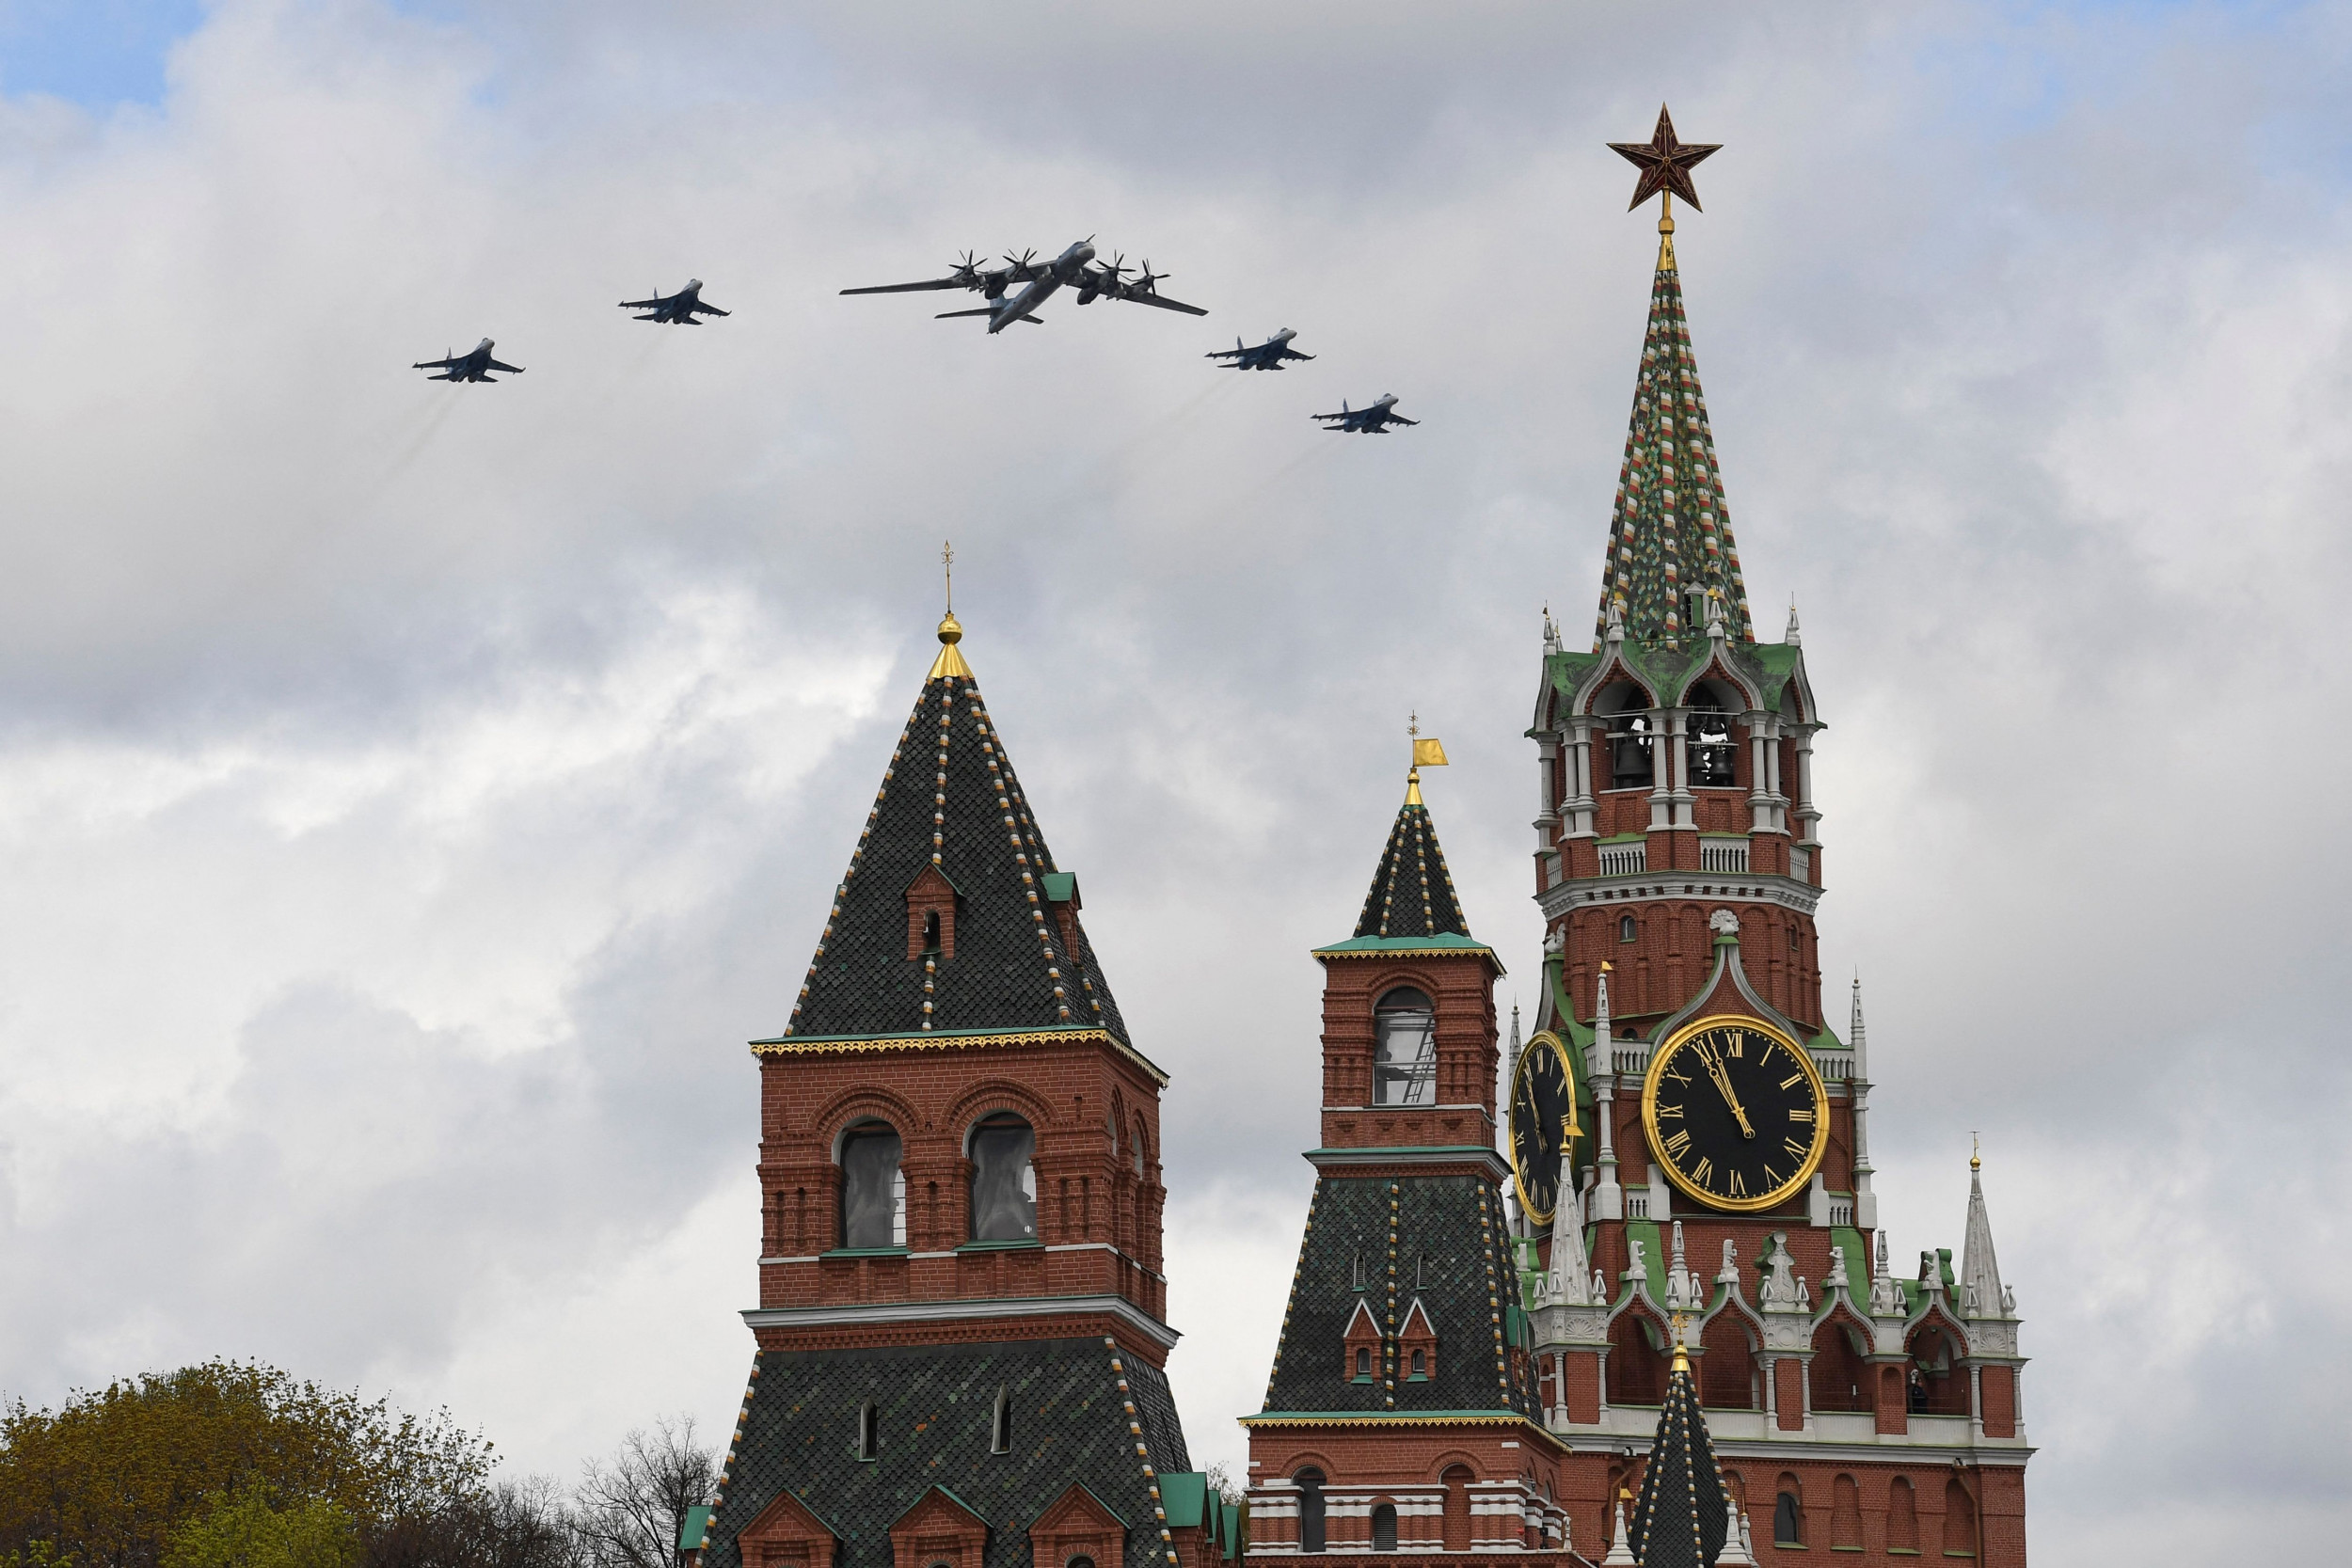 Odrzutowce NATO wzbijają się w powietrze, gdy nad Polską i Szwecją pojawiają się rosyjskie samoloty bojowe